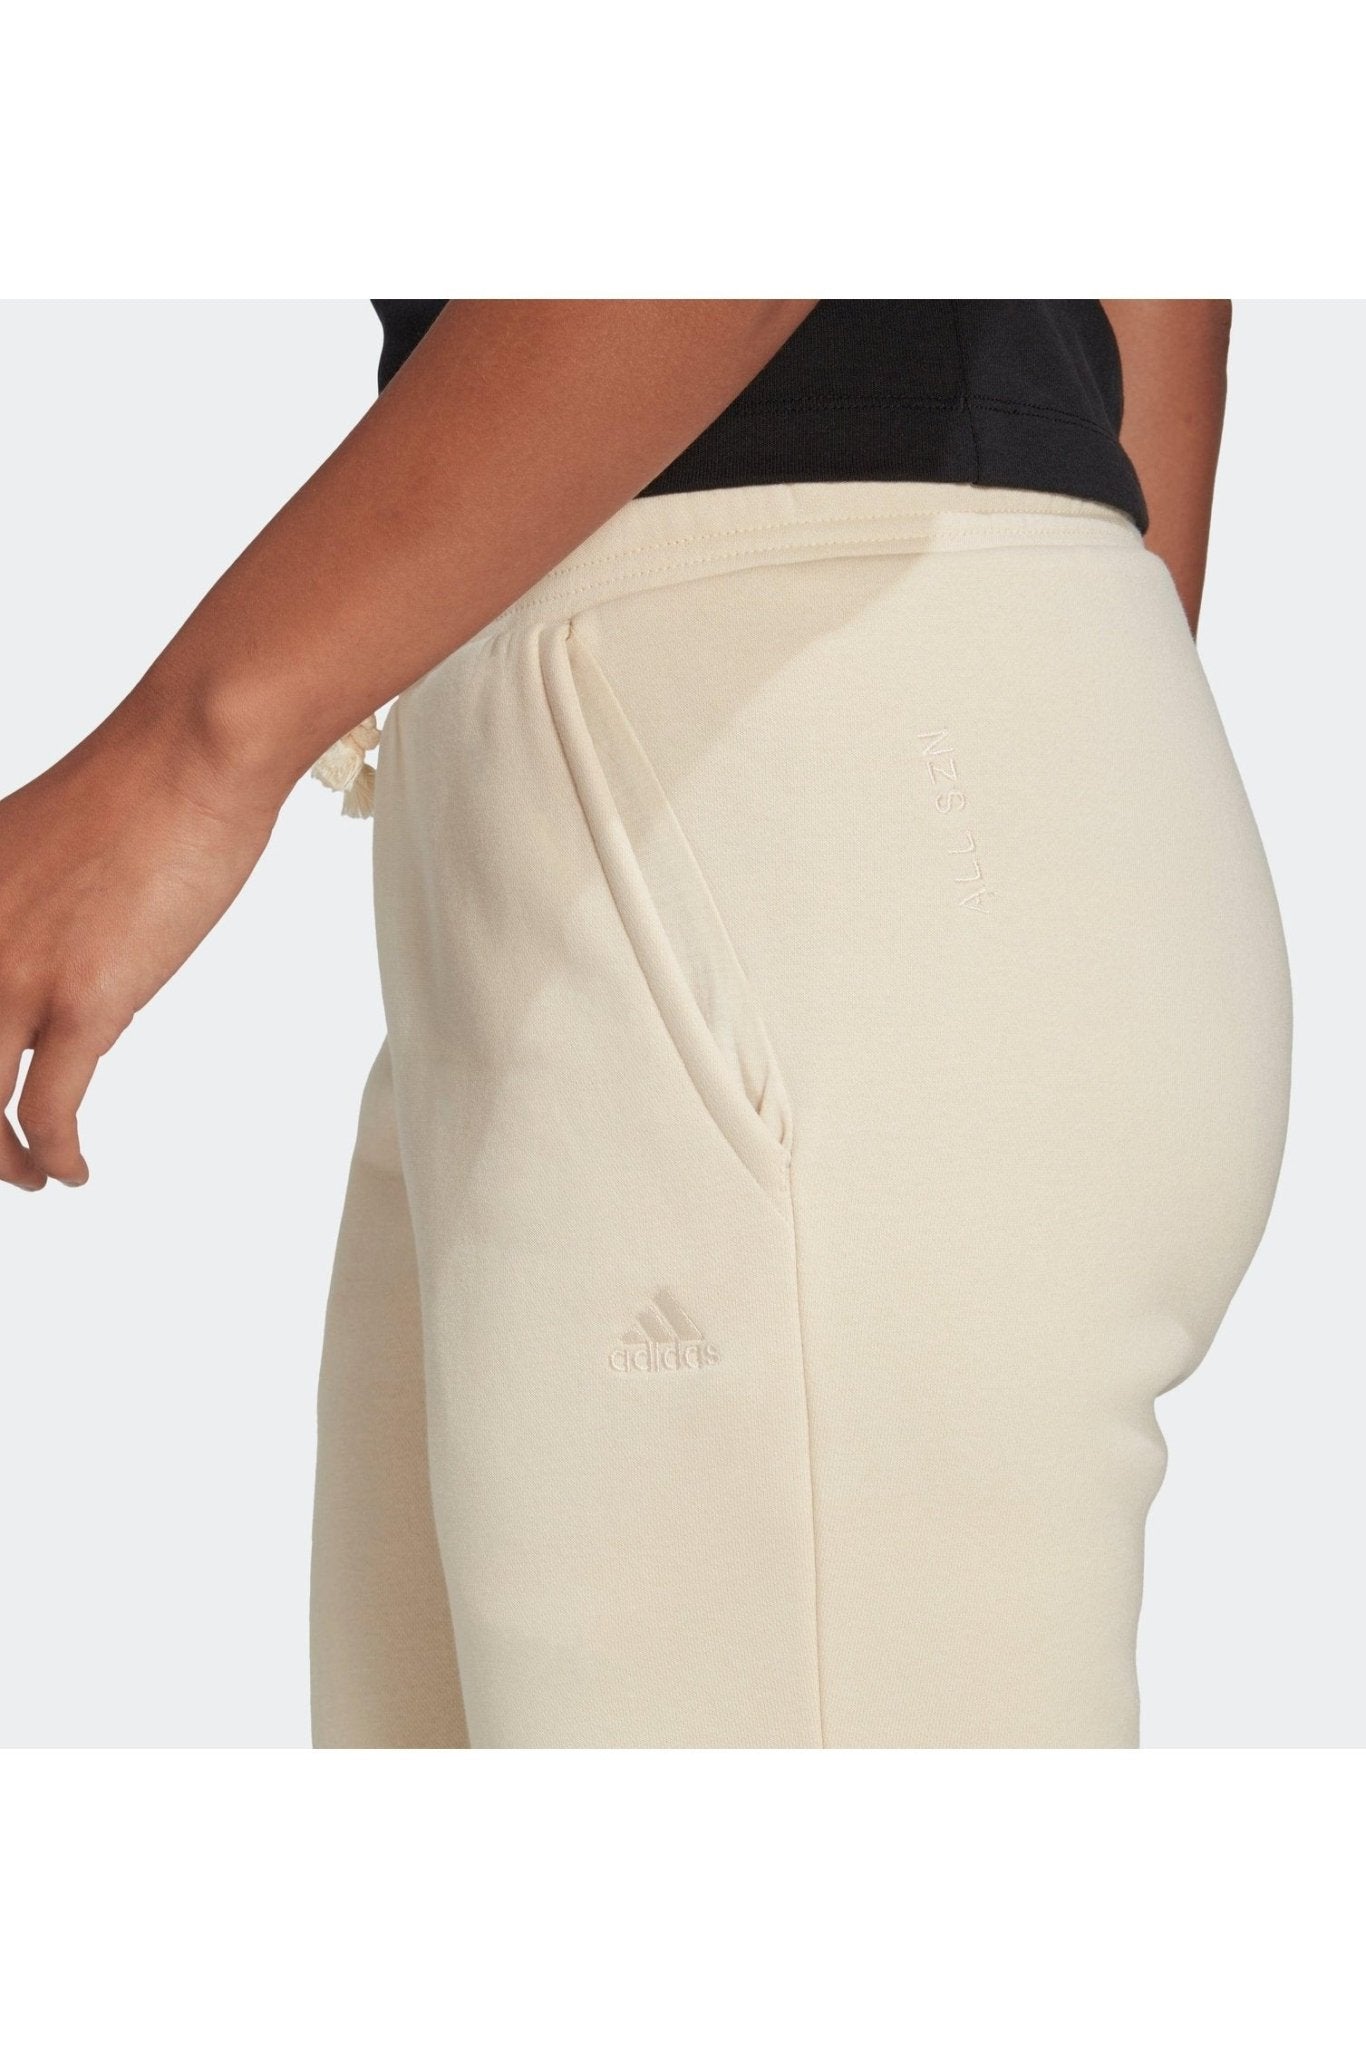 ADIDAS - מכנסיים ארוכים ALL SZN לנשים בצבע שמנת - MASHBIR//365